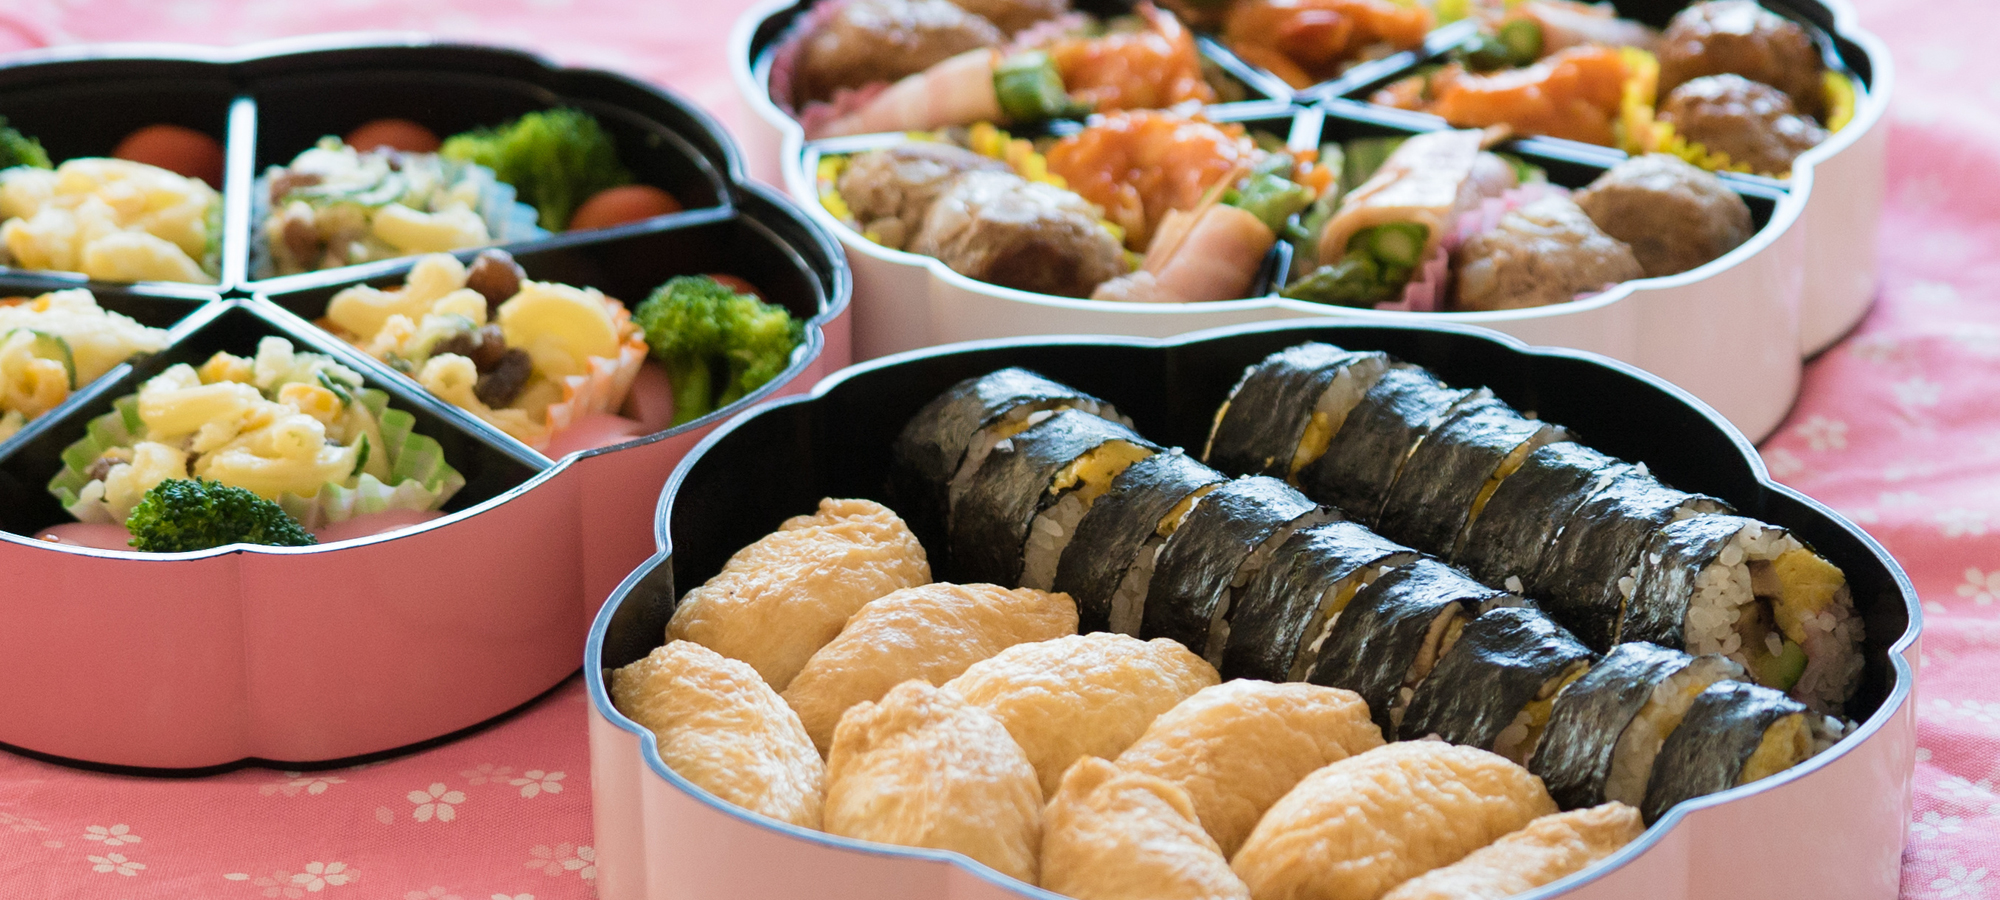 稲荷寿司など、皆で楽しめる定番のお弁当も提供します。